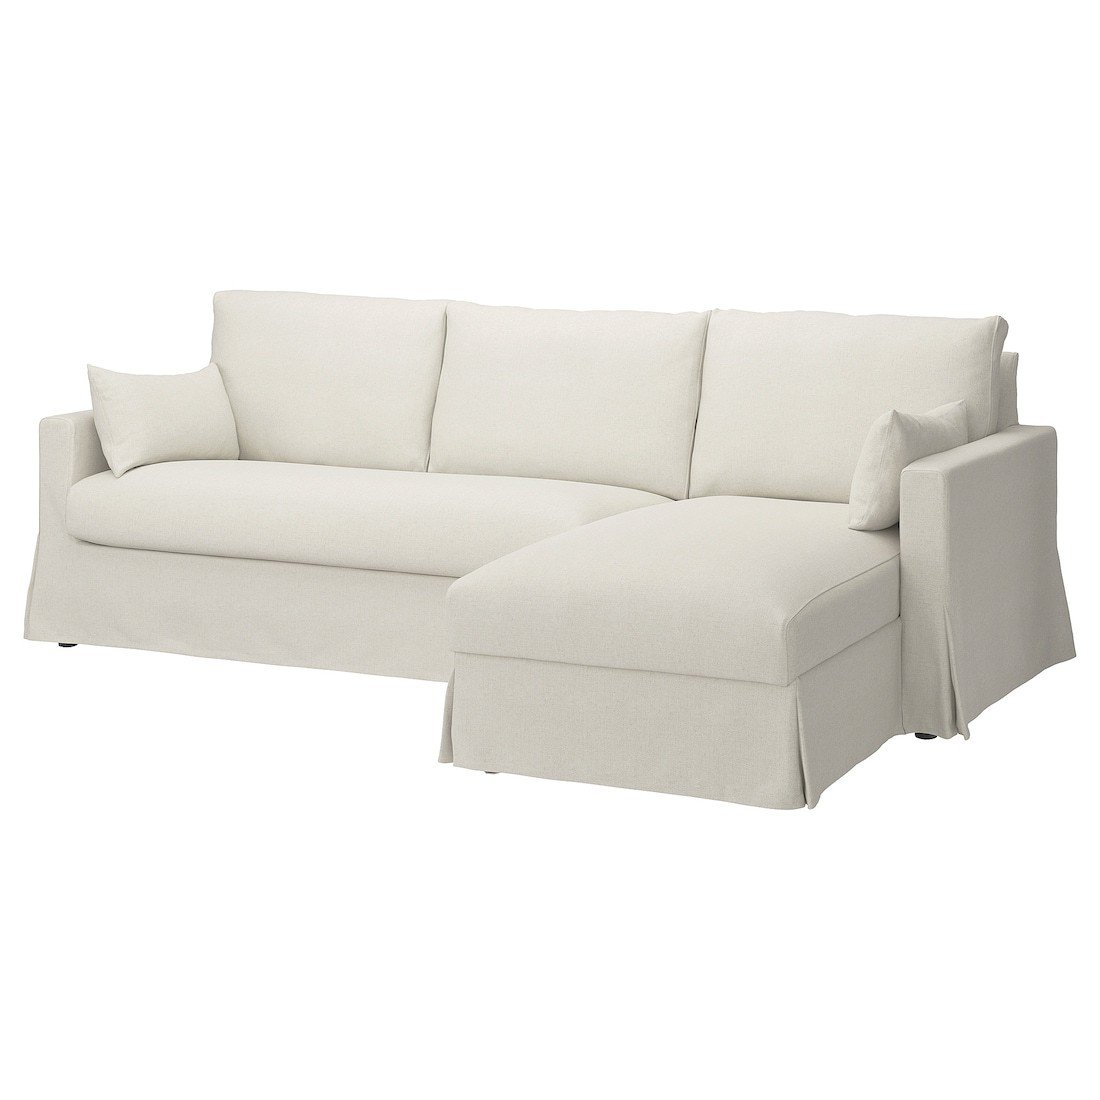 HYLTARP 3-місний диван з козеткою, правосторонній, Gransel натуральний